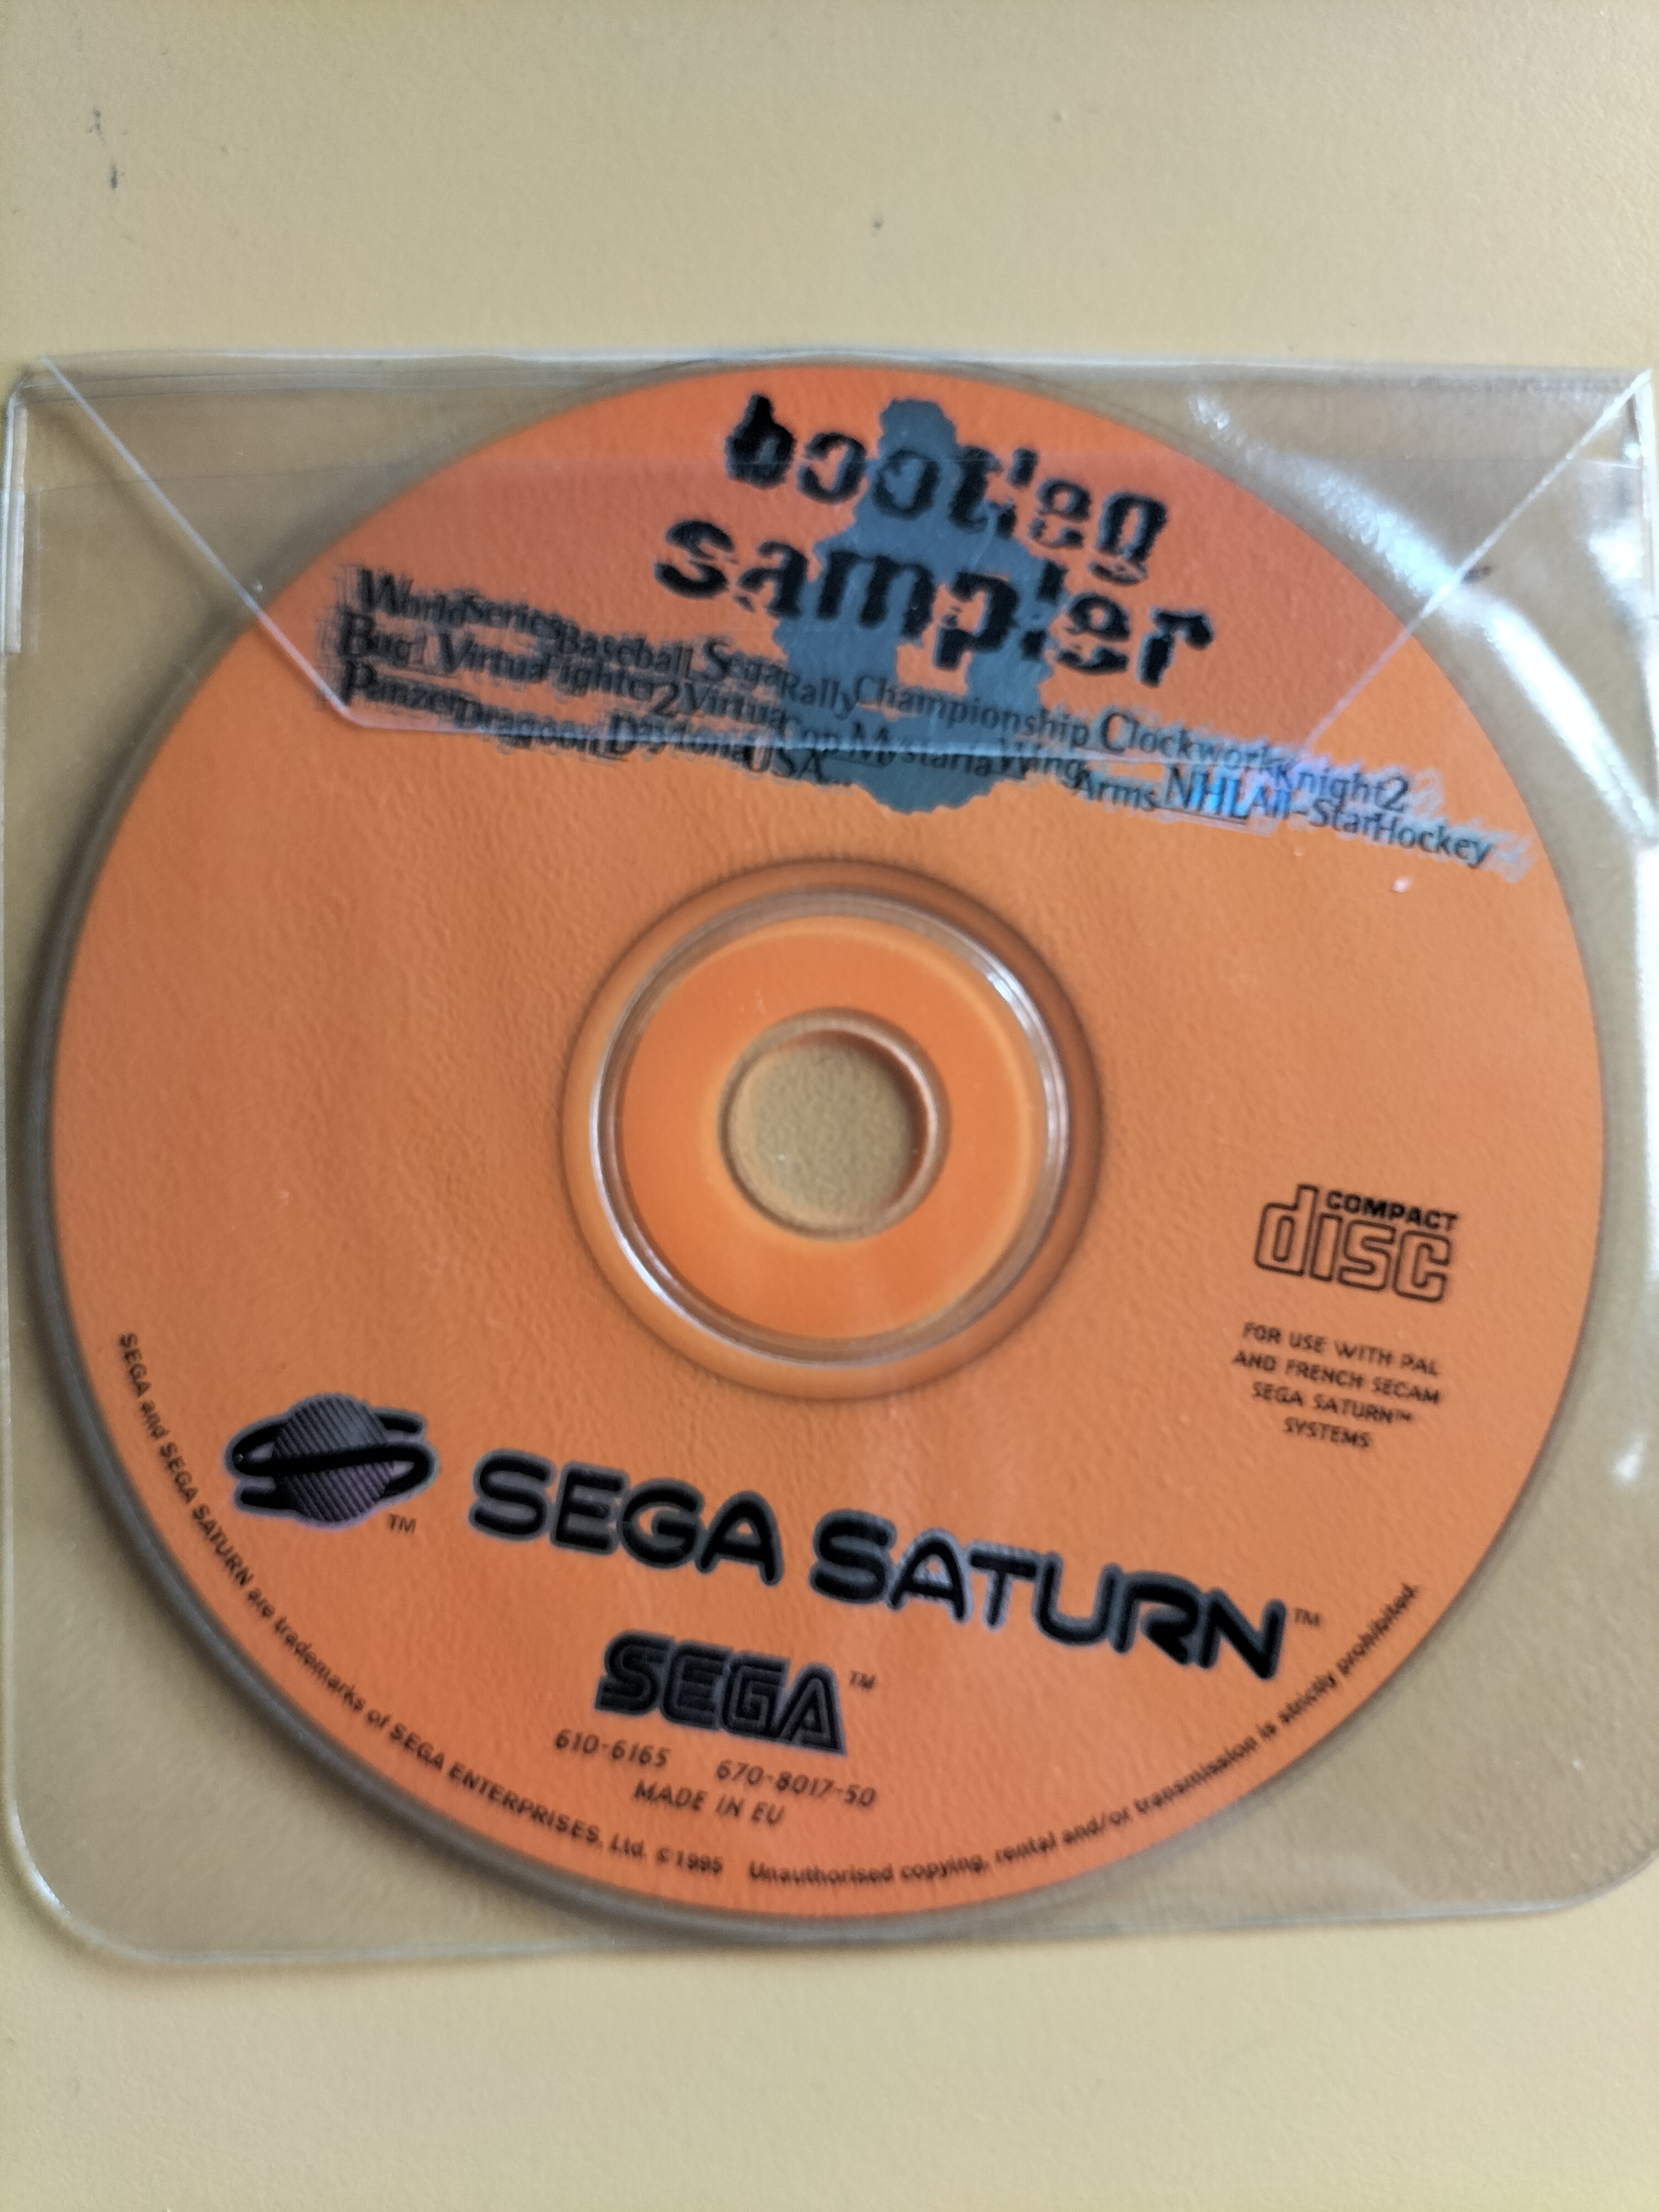 Bootleg Saturn